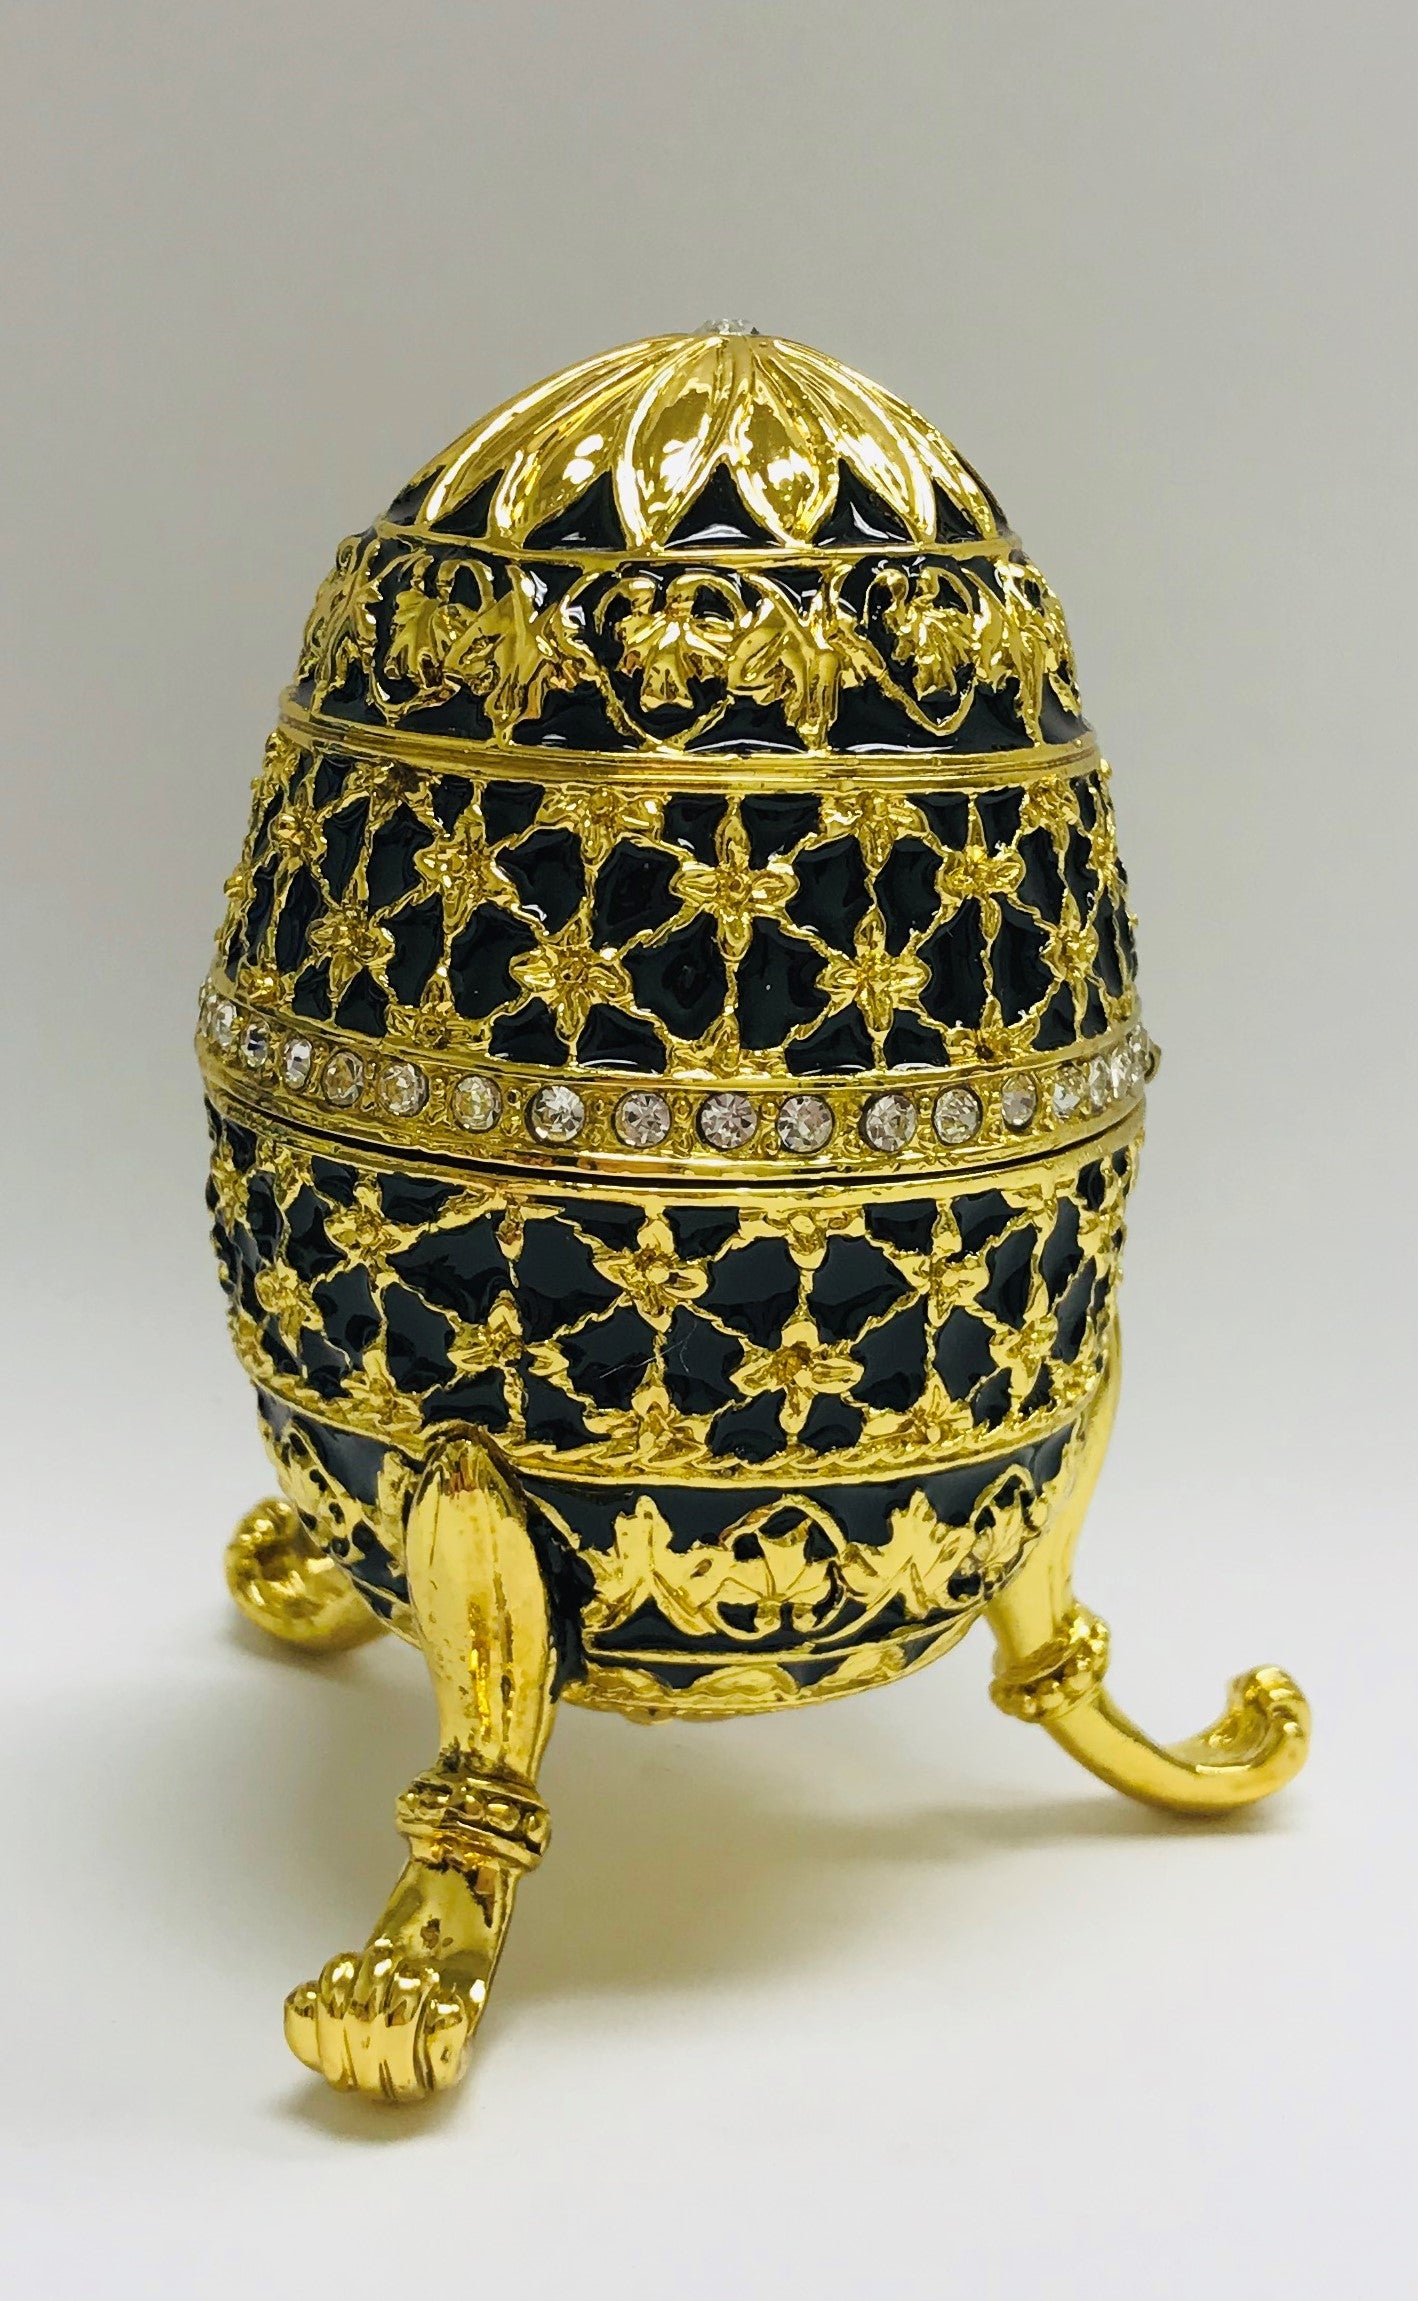 Cristiani Collezione Gold Black Musical Egg Trinket Box.